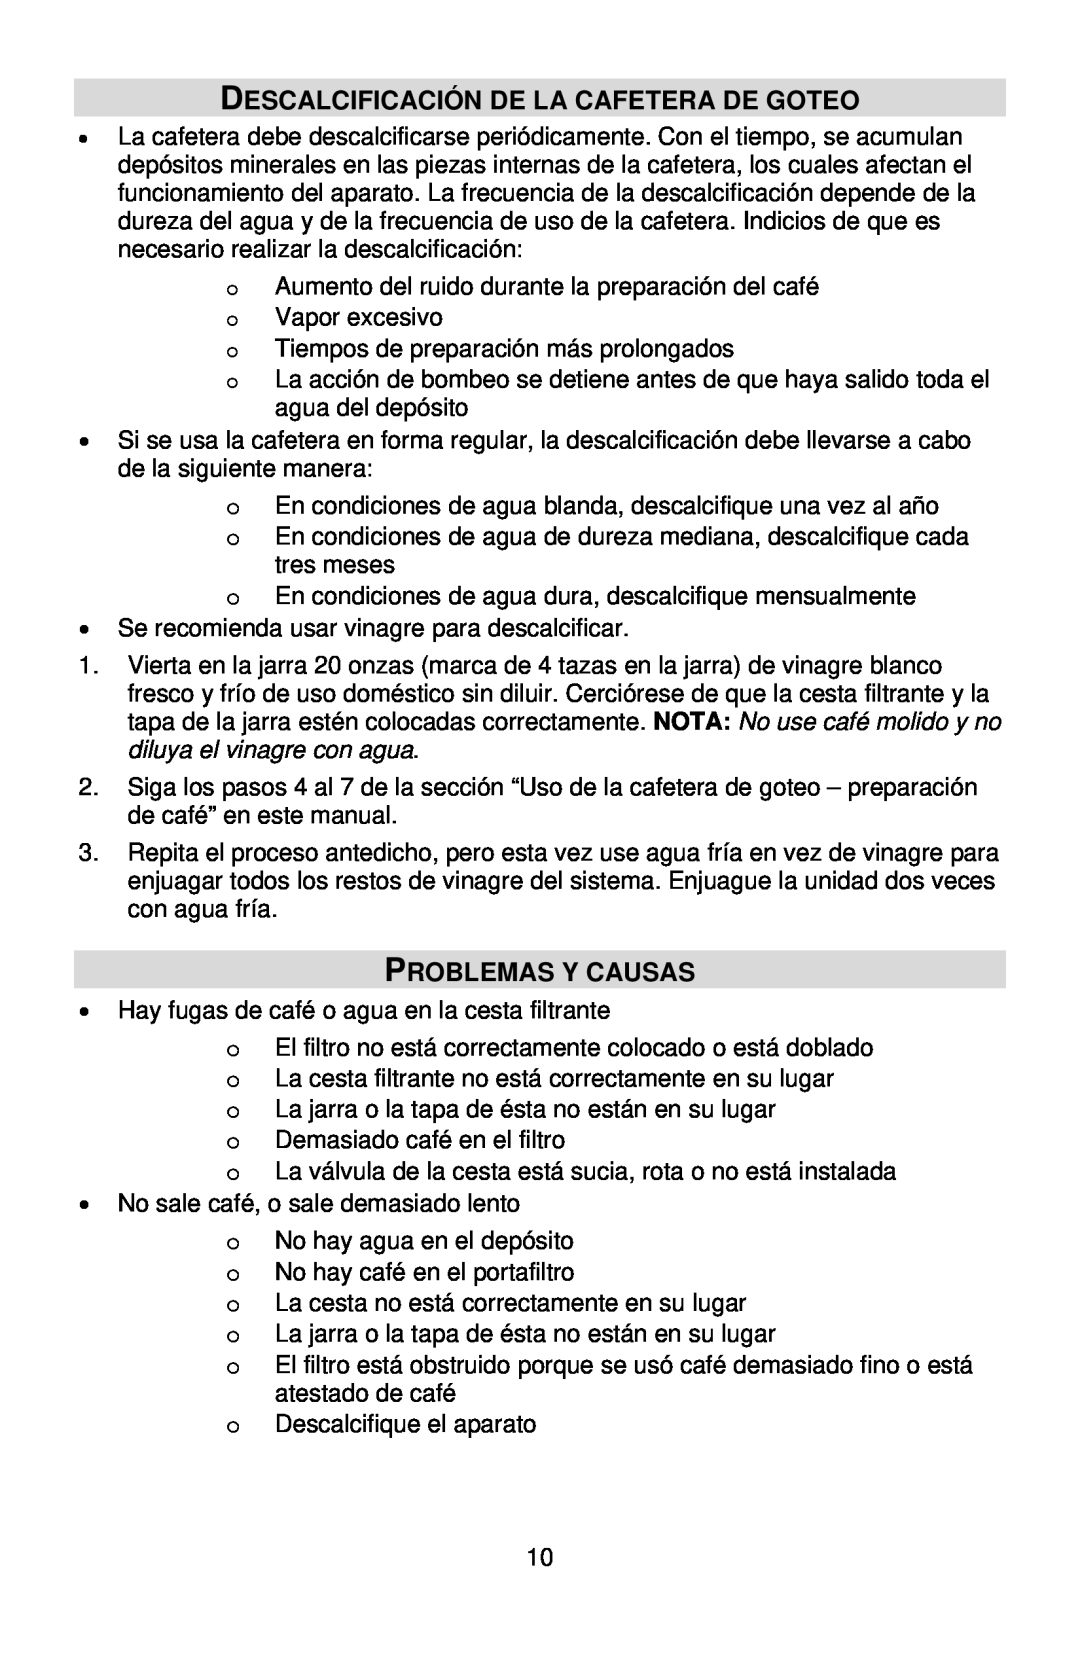 West Bend QUIKSERVE instruction manual Descalcificación De La Cafetera De Goteo, Problemas Y Causas 